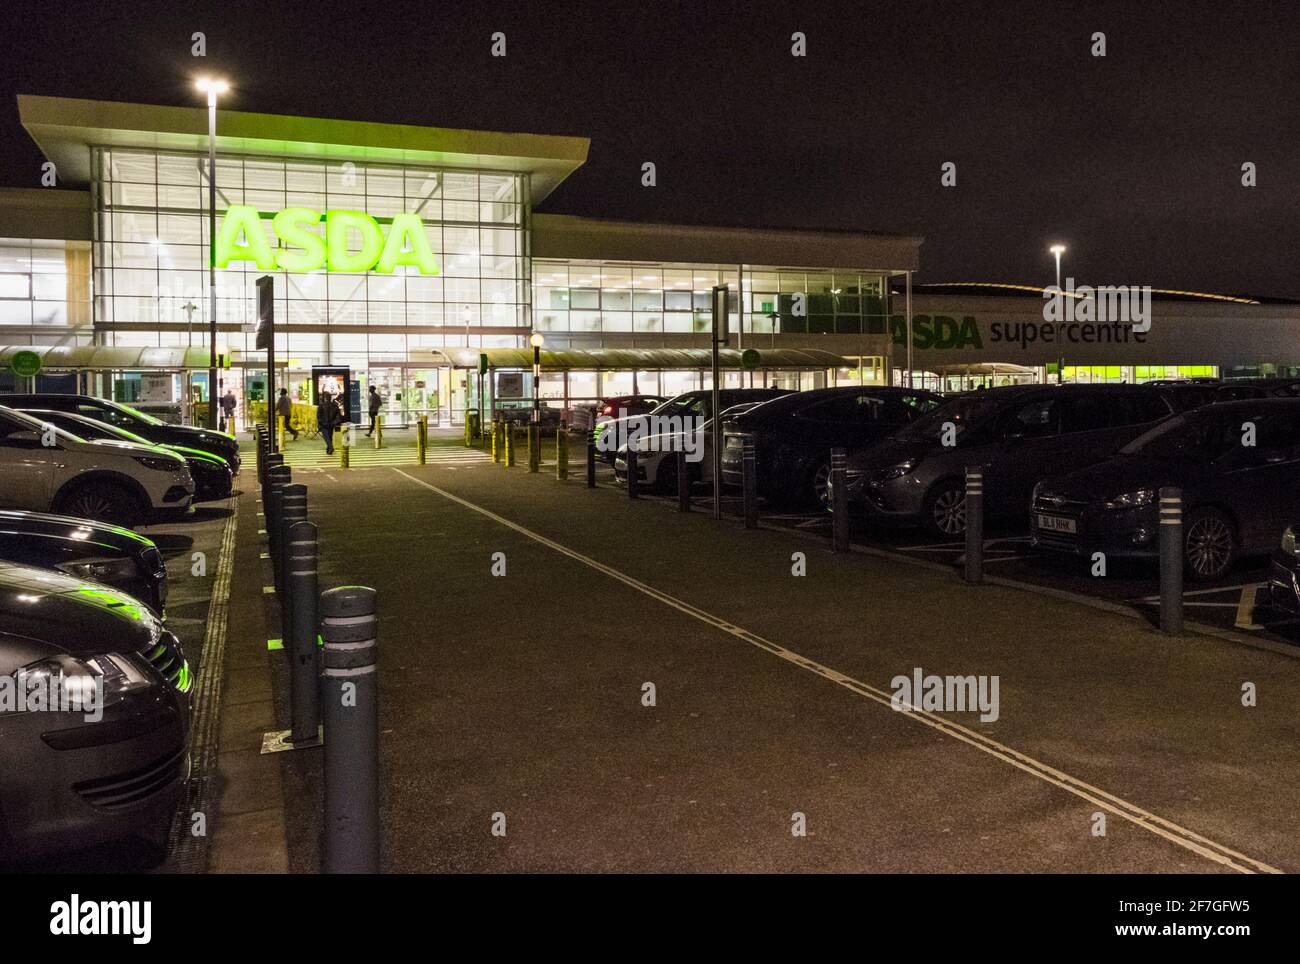 Late night shopping at Asda supermarket, West Bridgford, Nottinghamshire, England, UK Stock Photo